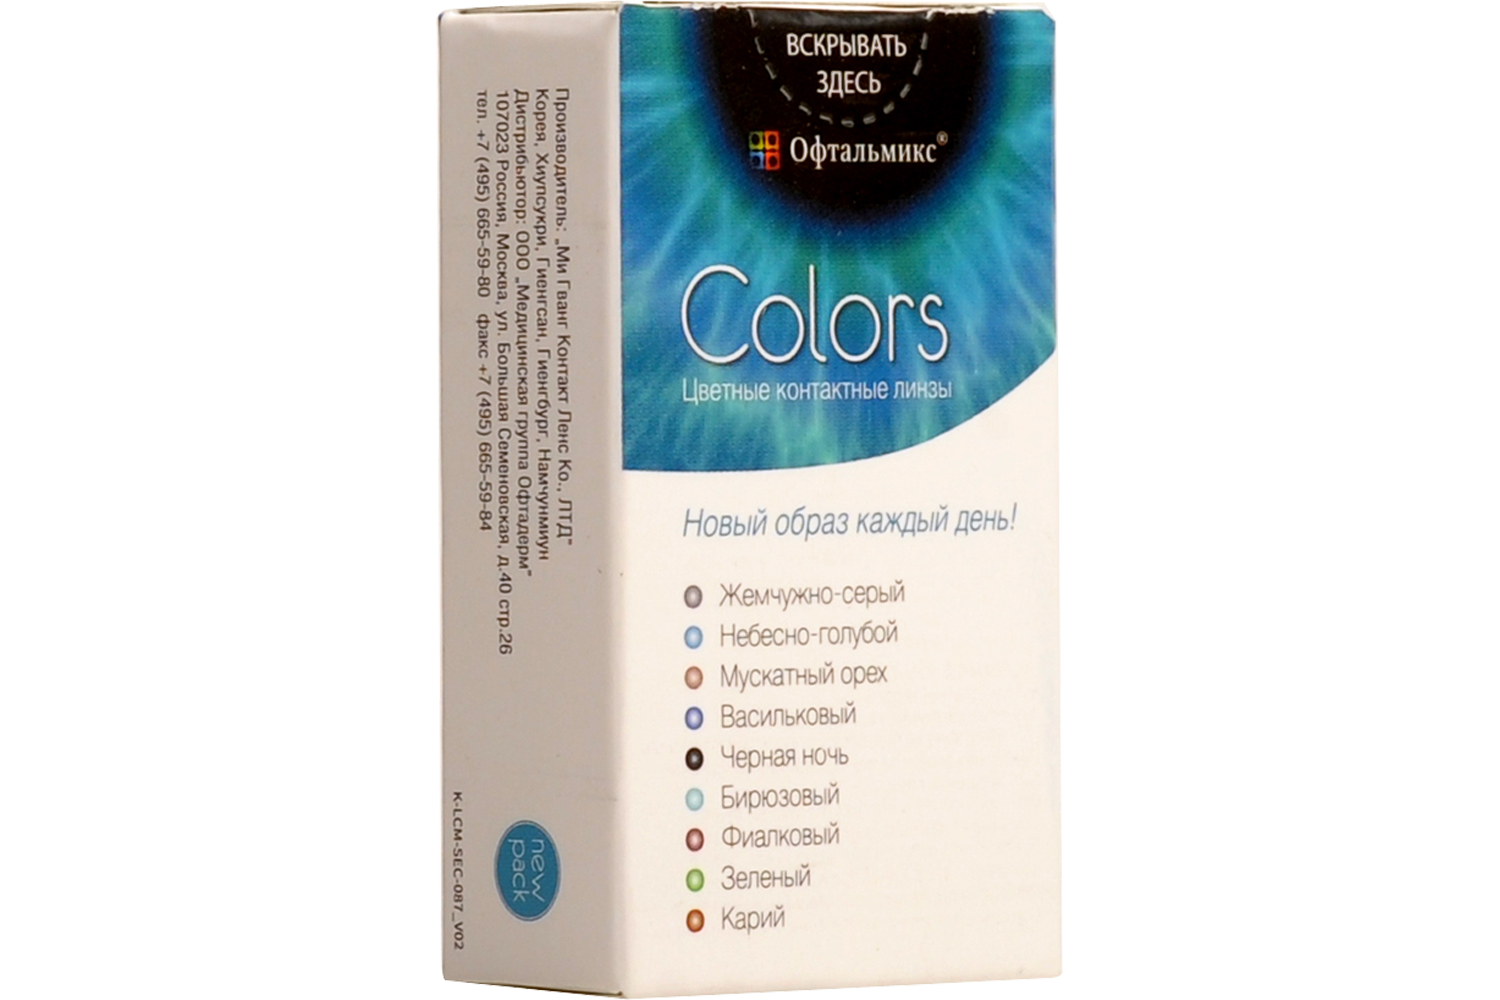 Купить Цветные контактные линзы Офтальмикс Colors, 2 шт. PWR -0, 00, R 8.6, Sky Blue